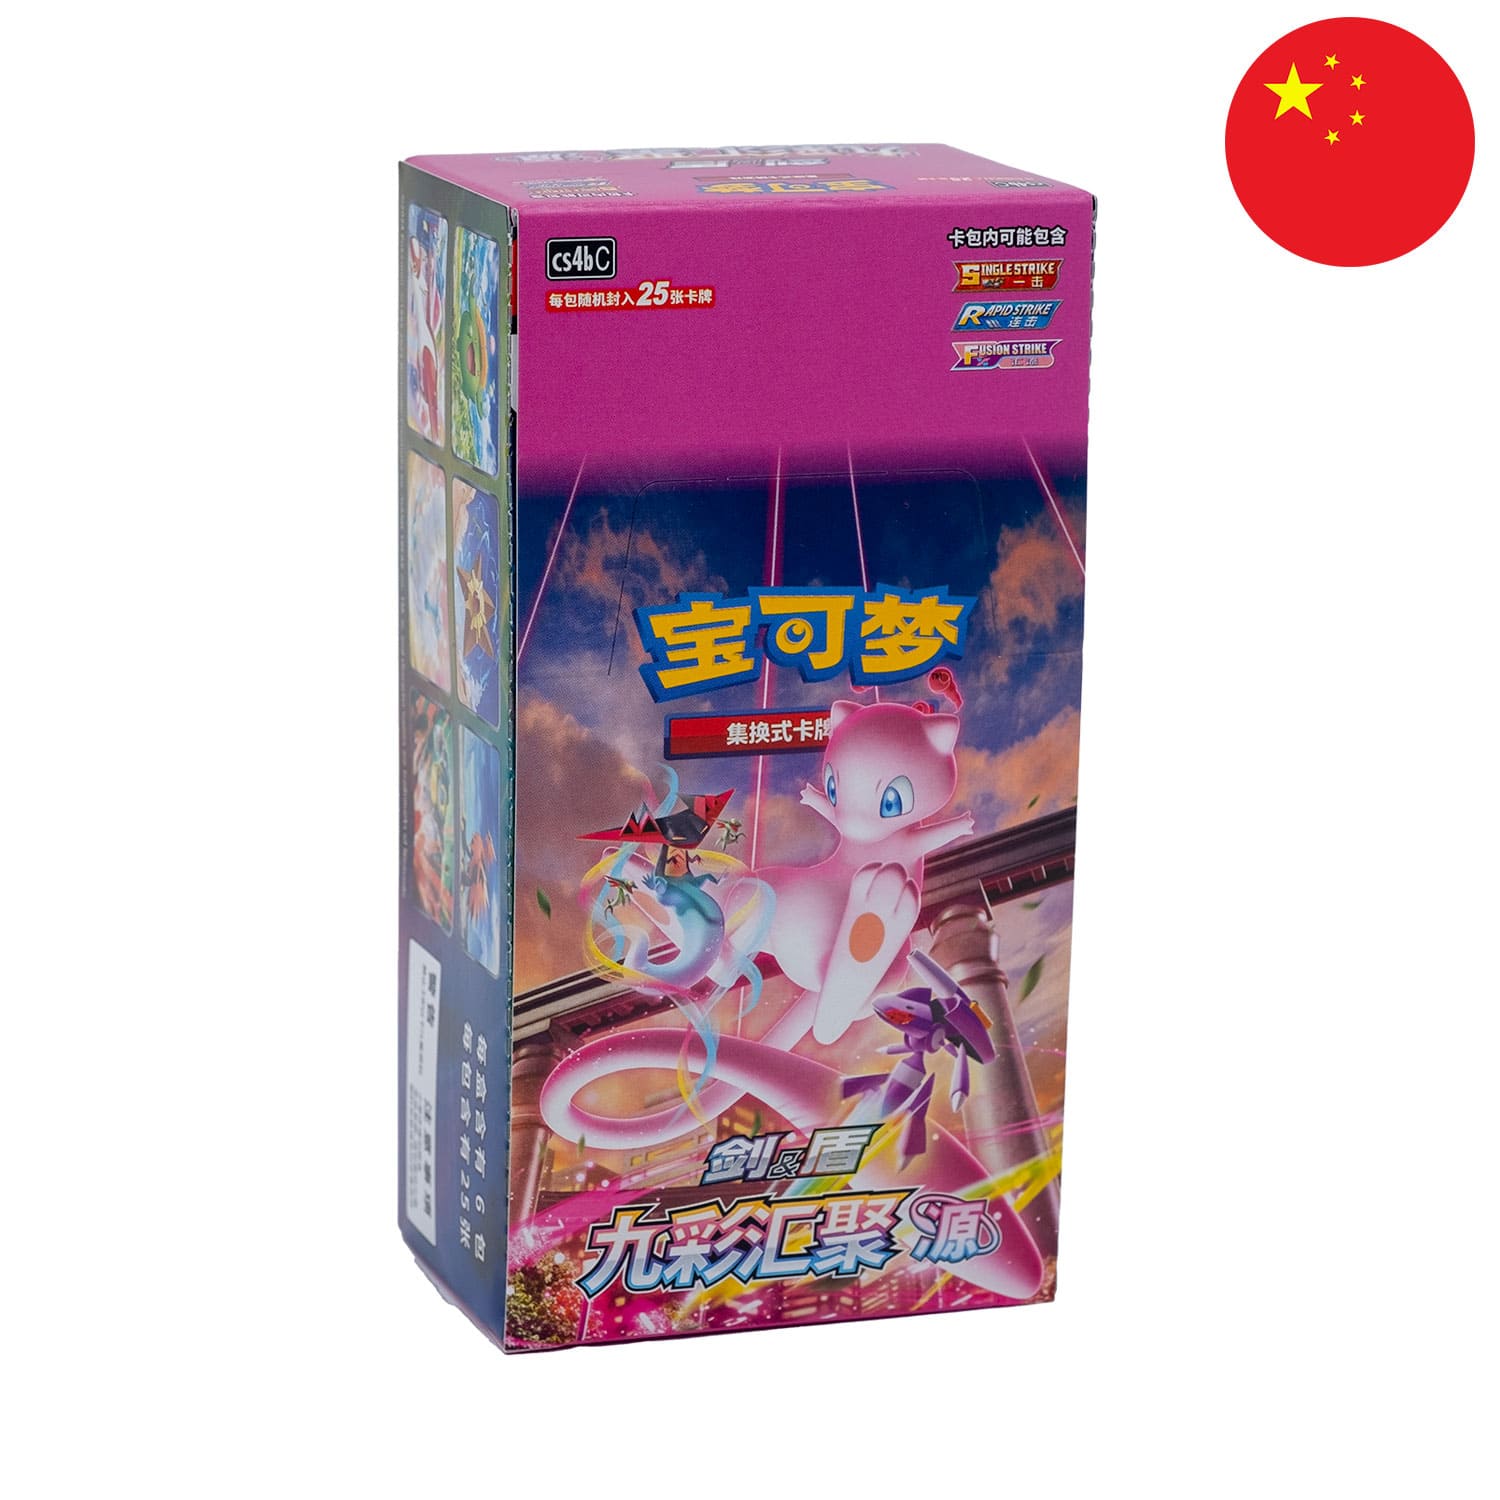 Das Pokemon Display Nine Colors Gathering: Origin (CS4b), frontal & schräg als Hauptbild, mit der Flagge Chinas in der Ecke.